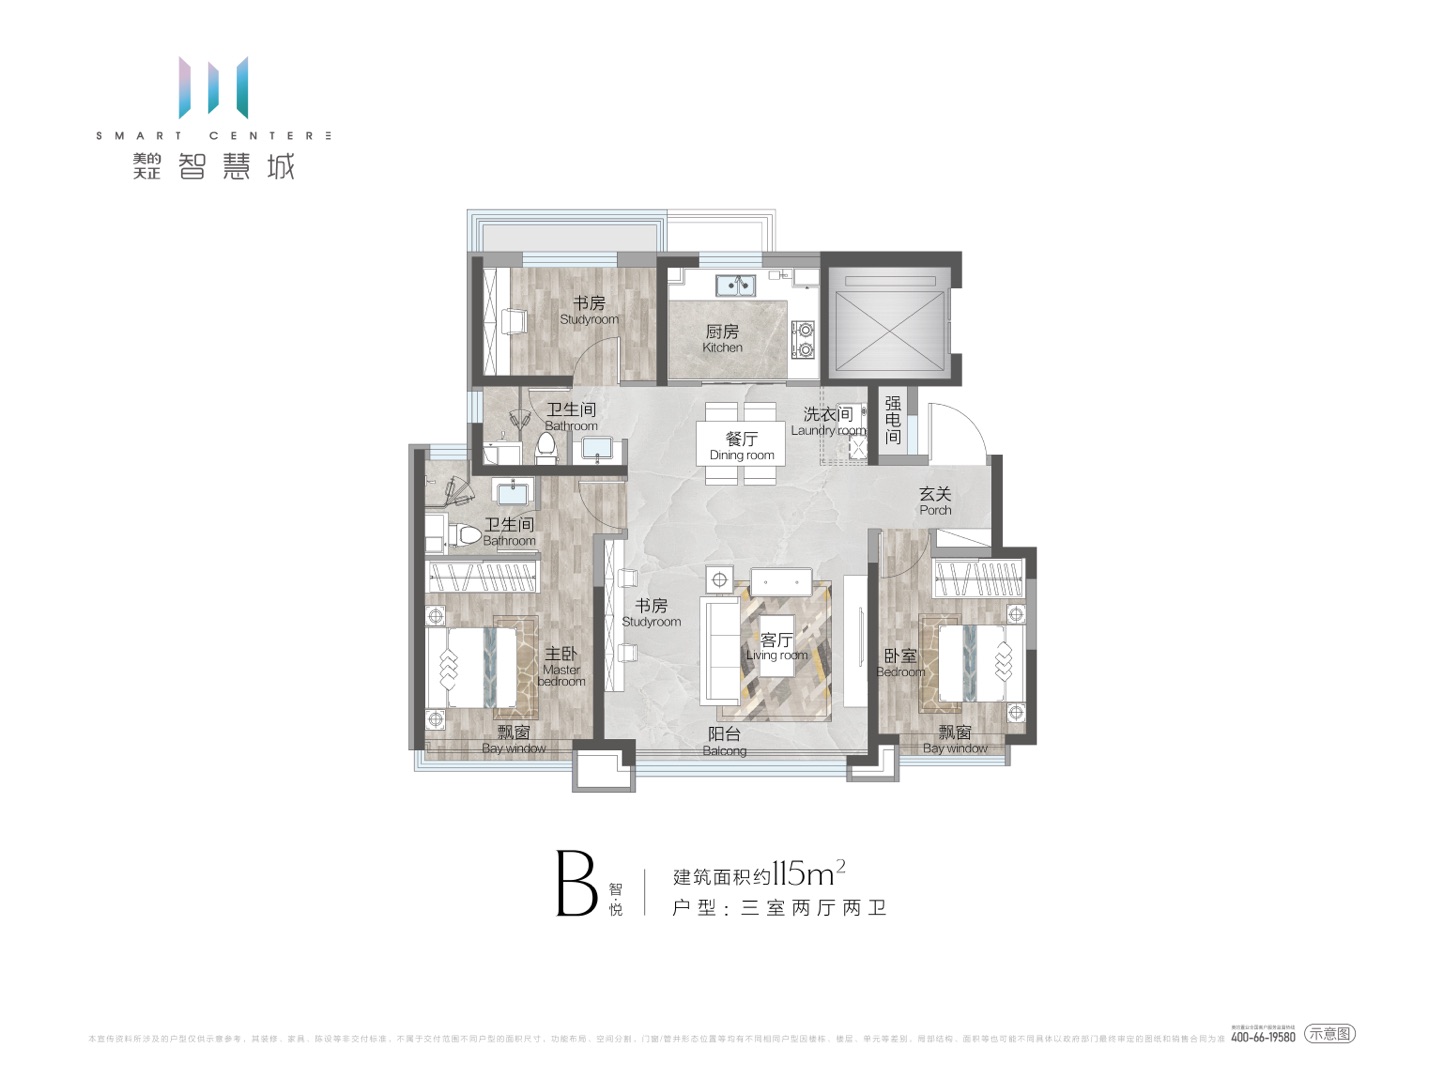 邯郸美的天正·智慧城B户型115㎡三室两厅两卫3室2厅2卫115平米